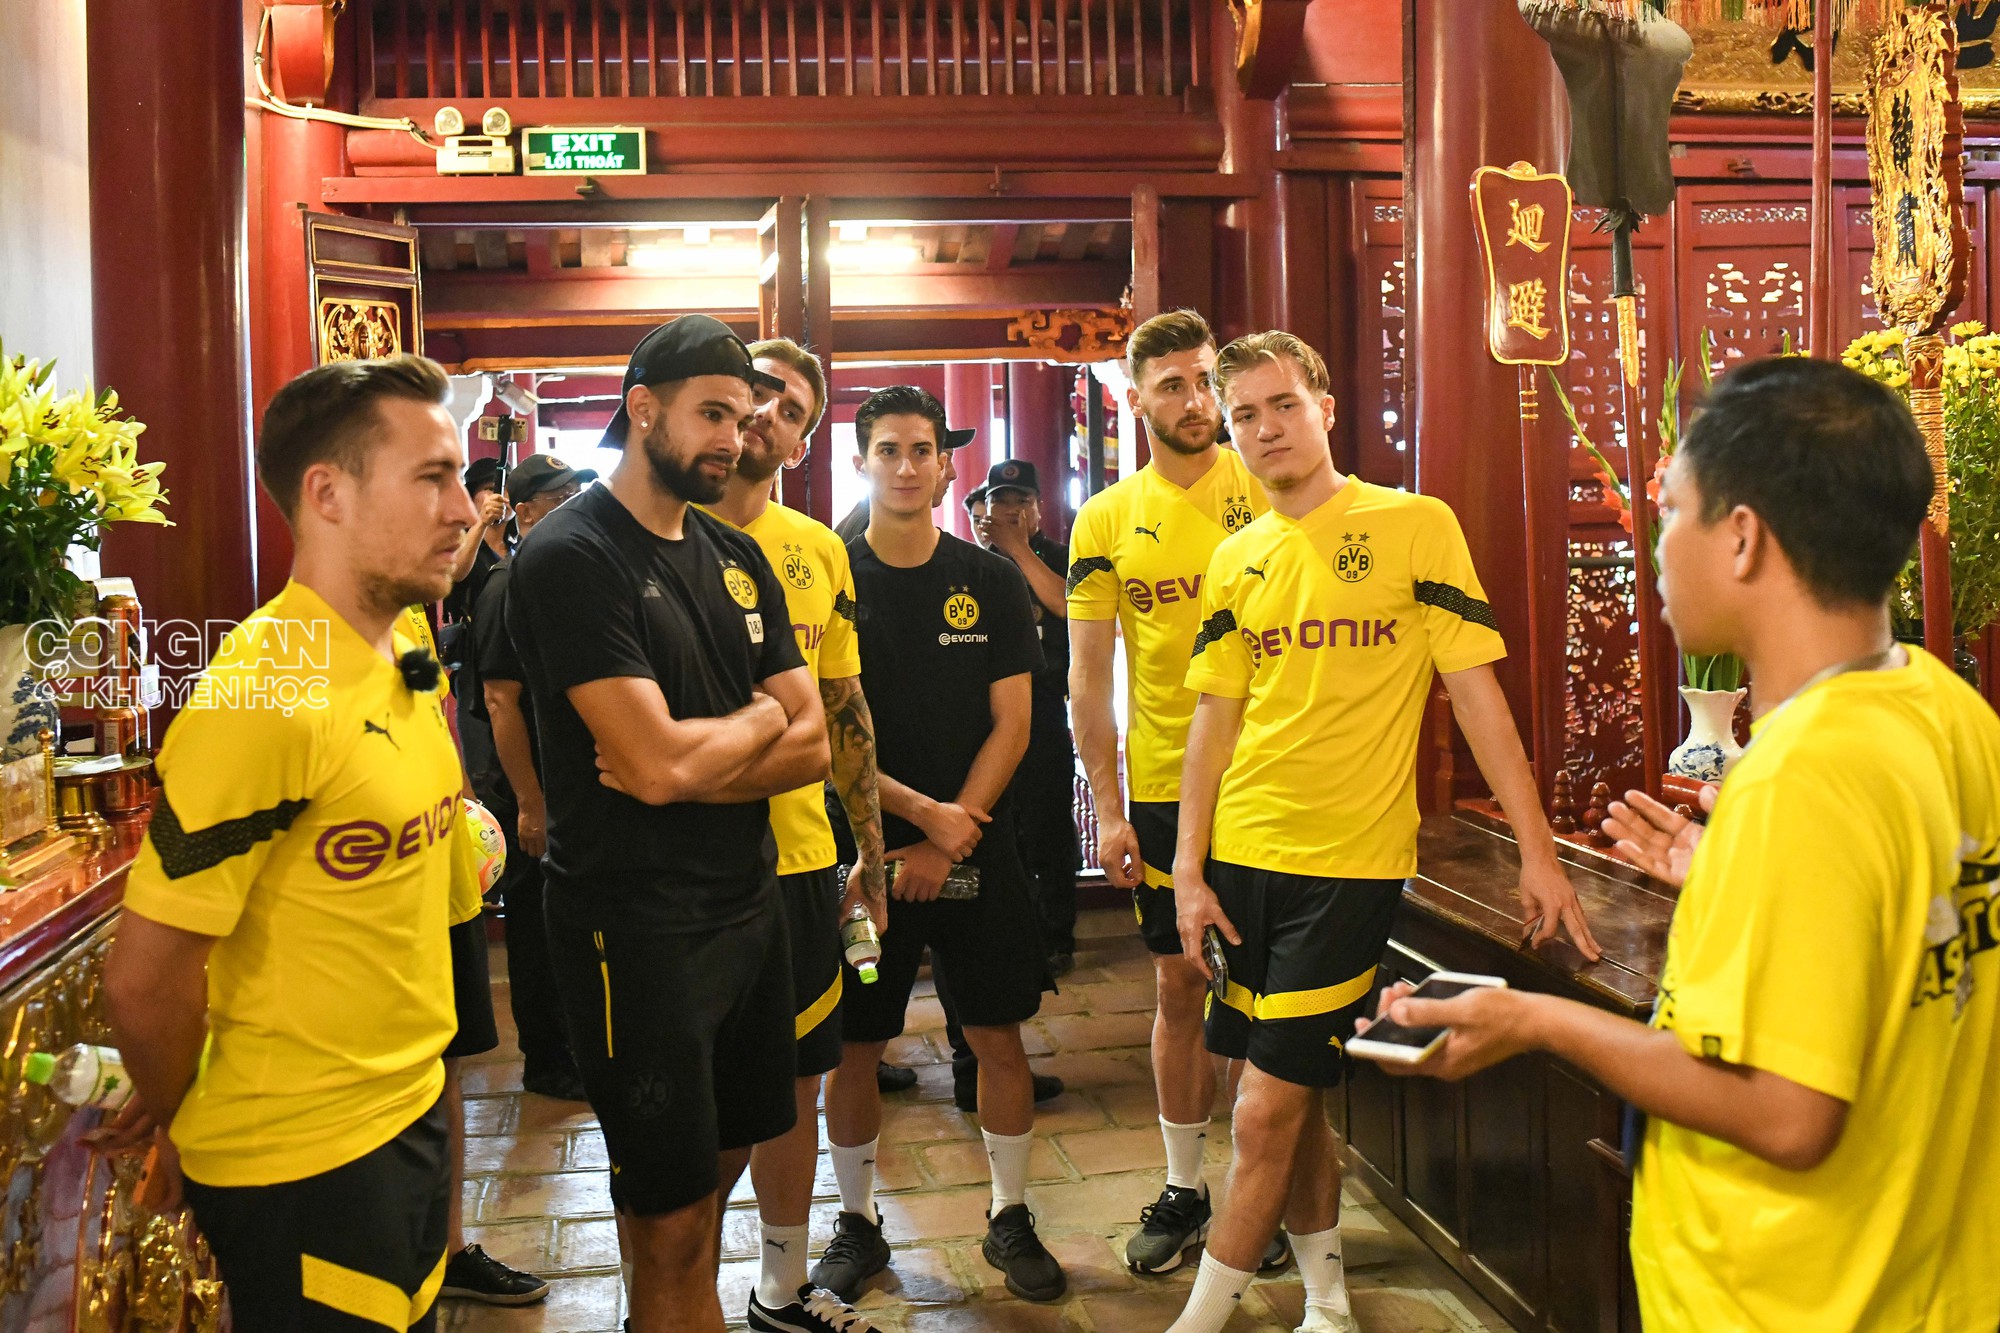 Câu lạc bộ Dortmund thăm Đền Ngọc Sơn, ngồi xích lô dạo phố ở Hà Nội - Ảnh 3.